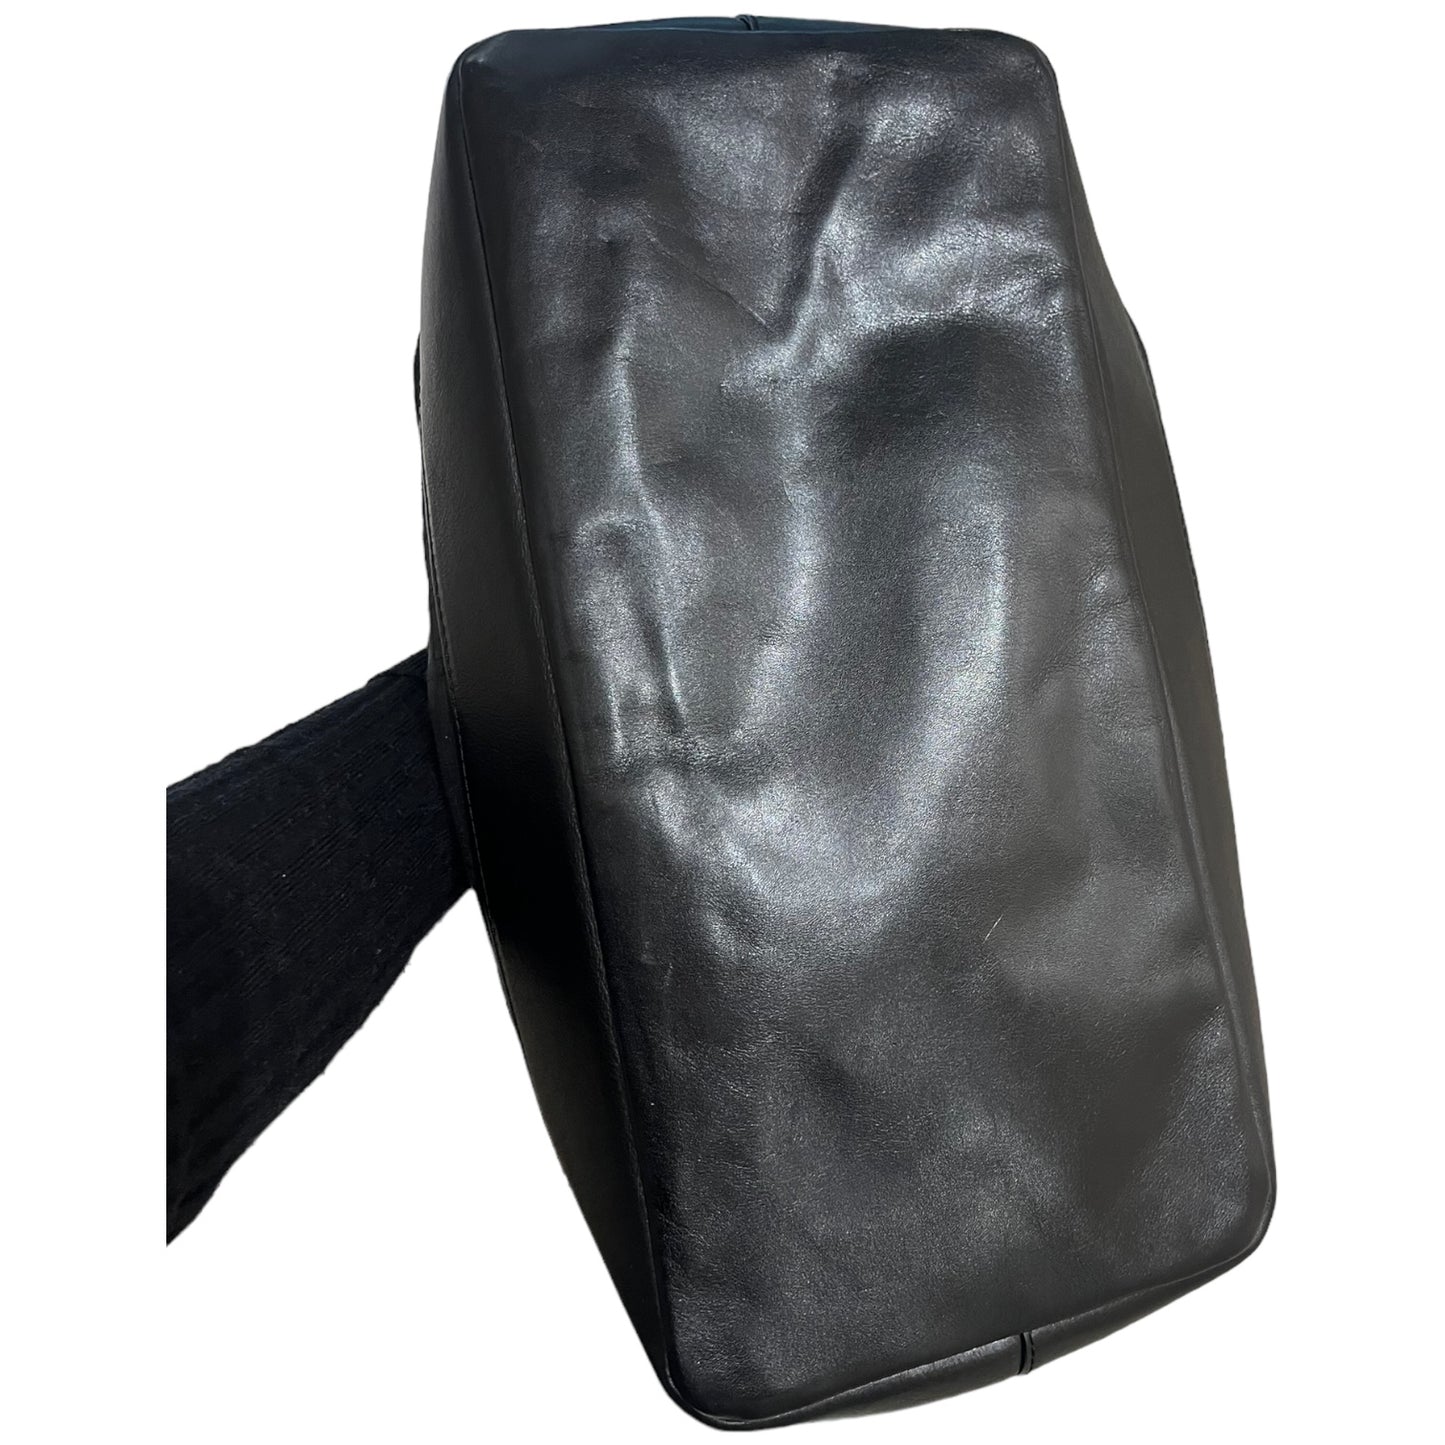 Givenchy Black Bowling Bag